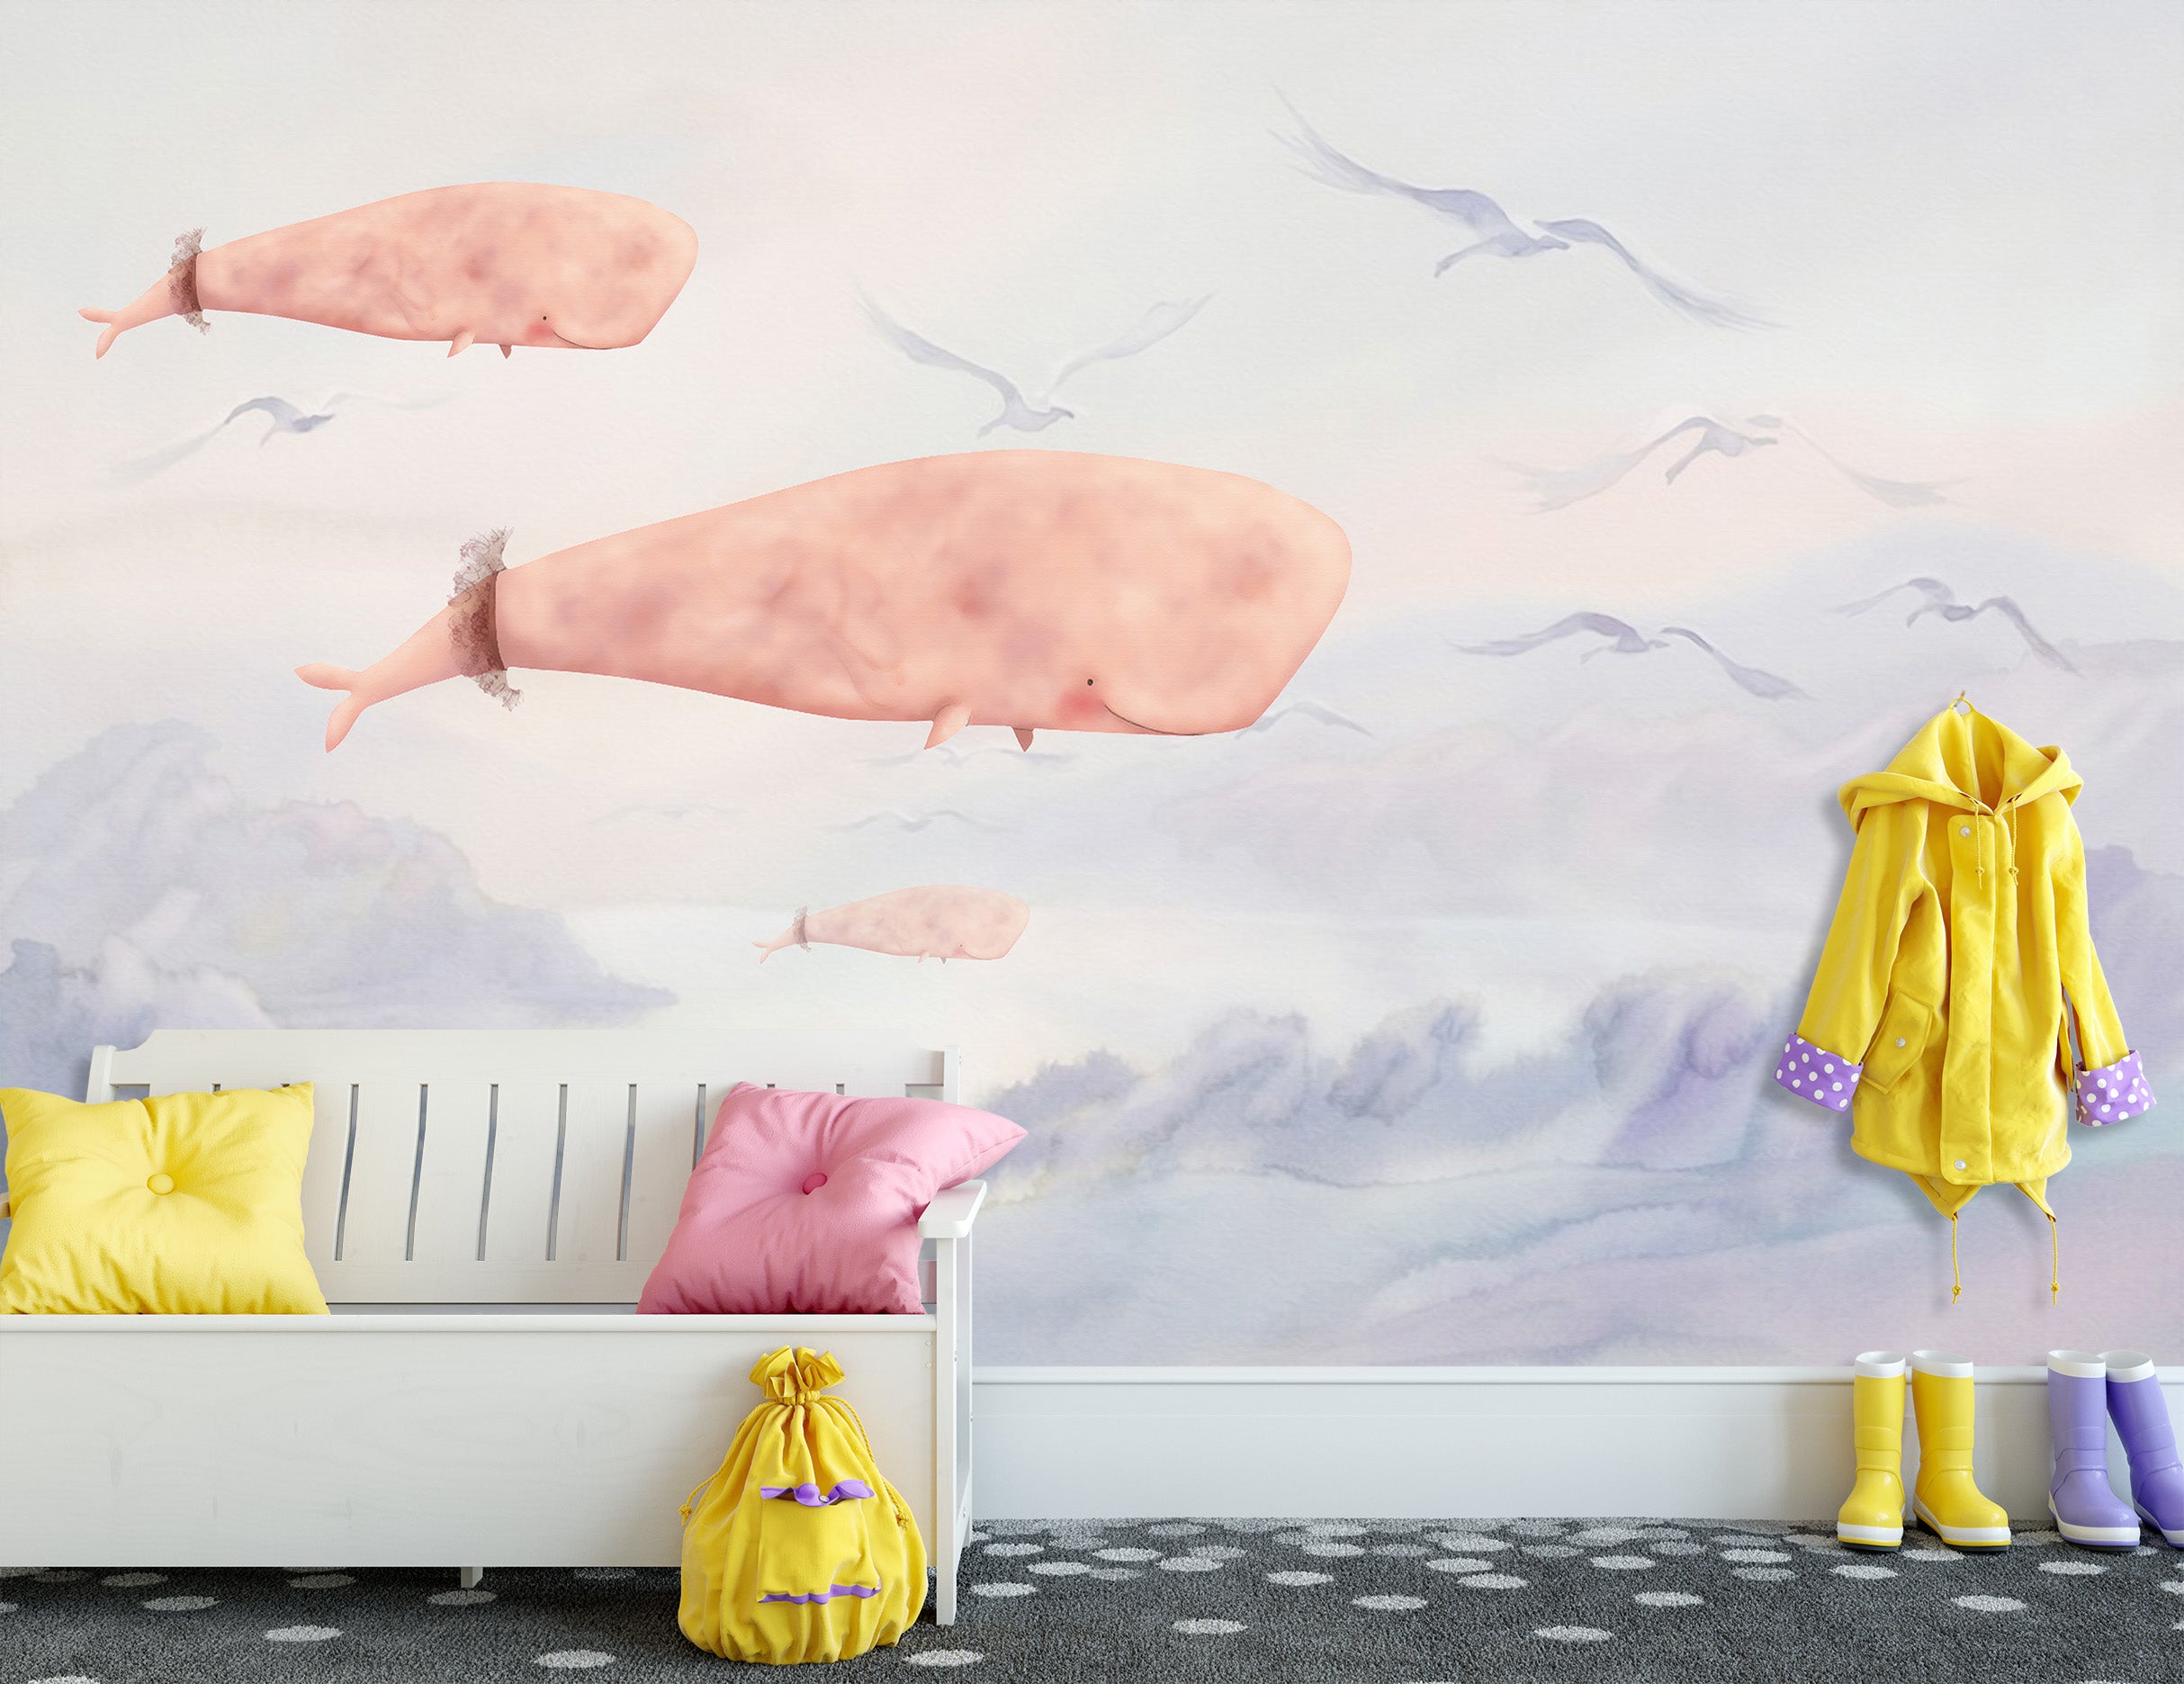 3D Pink Whale 1431 Wall Murals